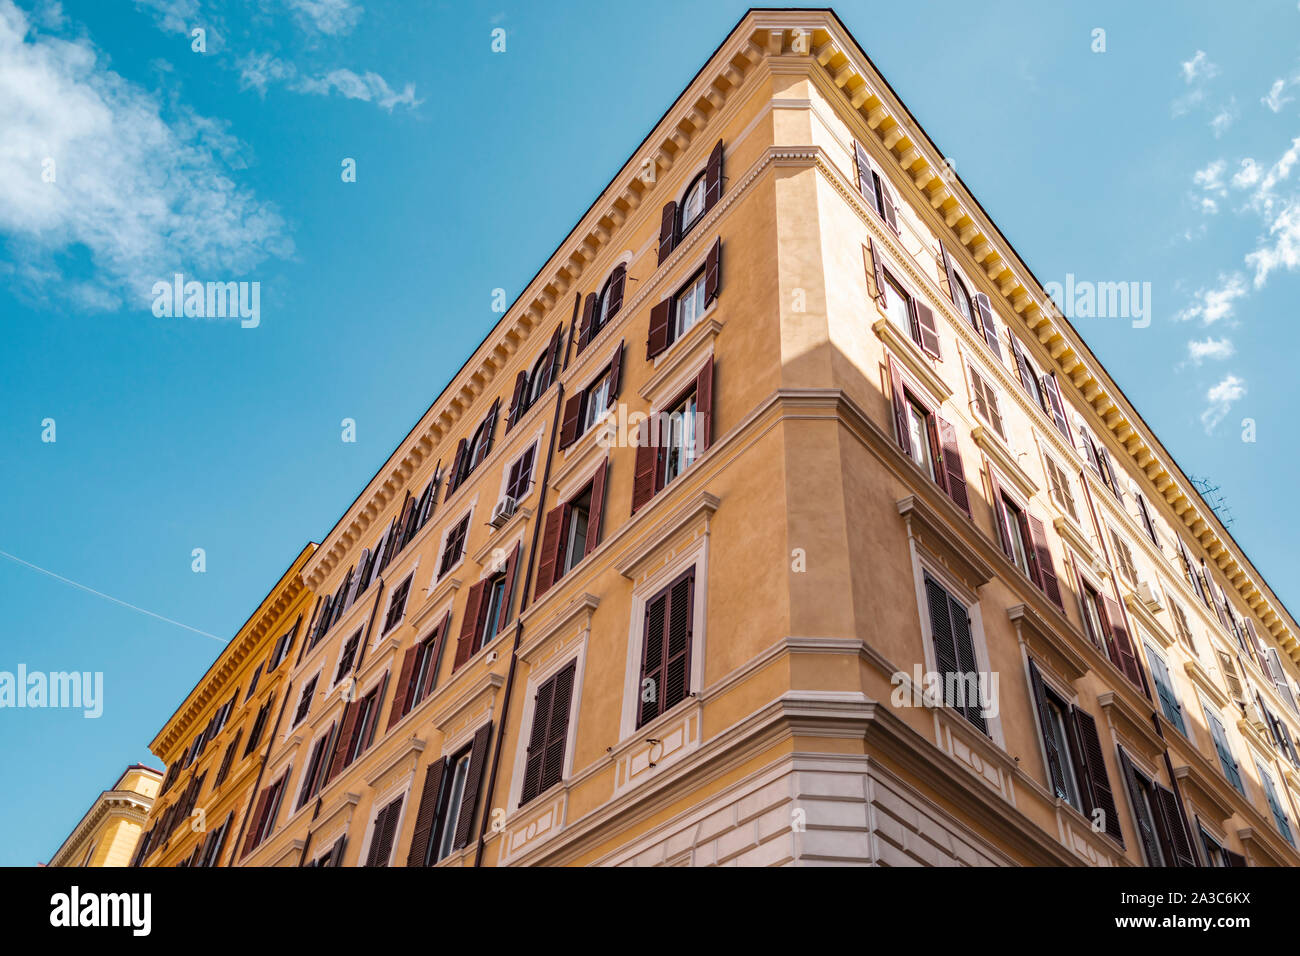 Vue d'une maison traditionnelle bâtiment architecture avec windows à Rome en Italie. Banque D'Images